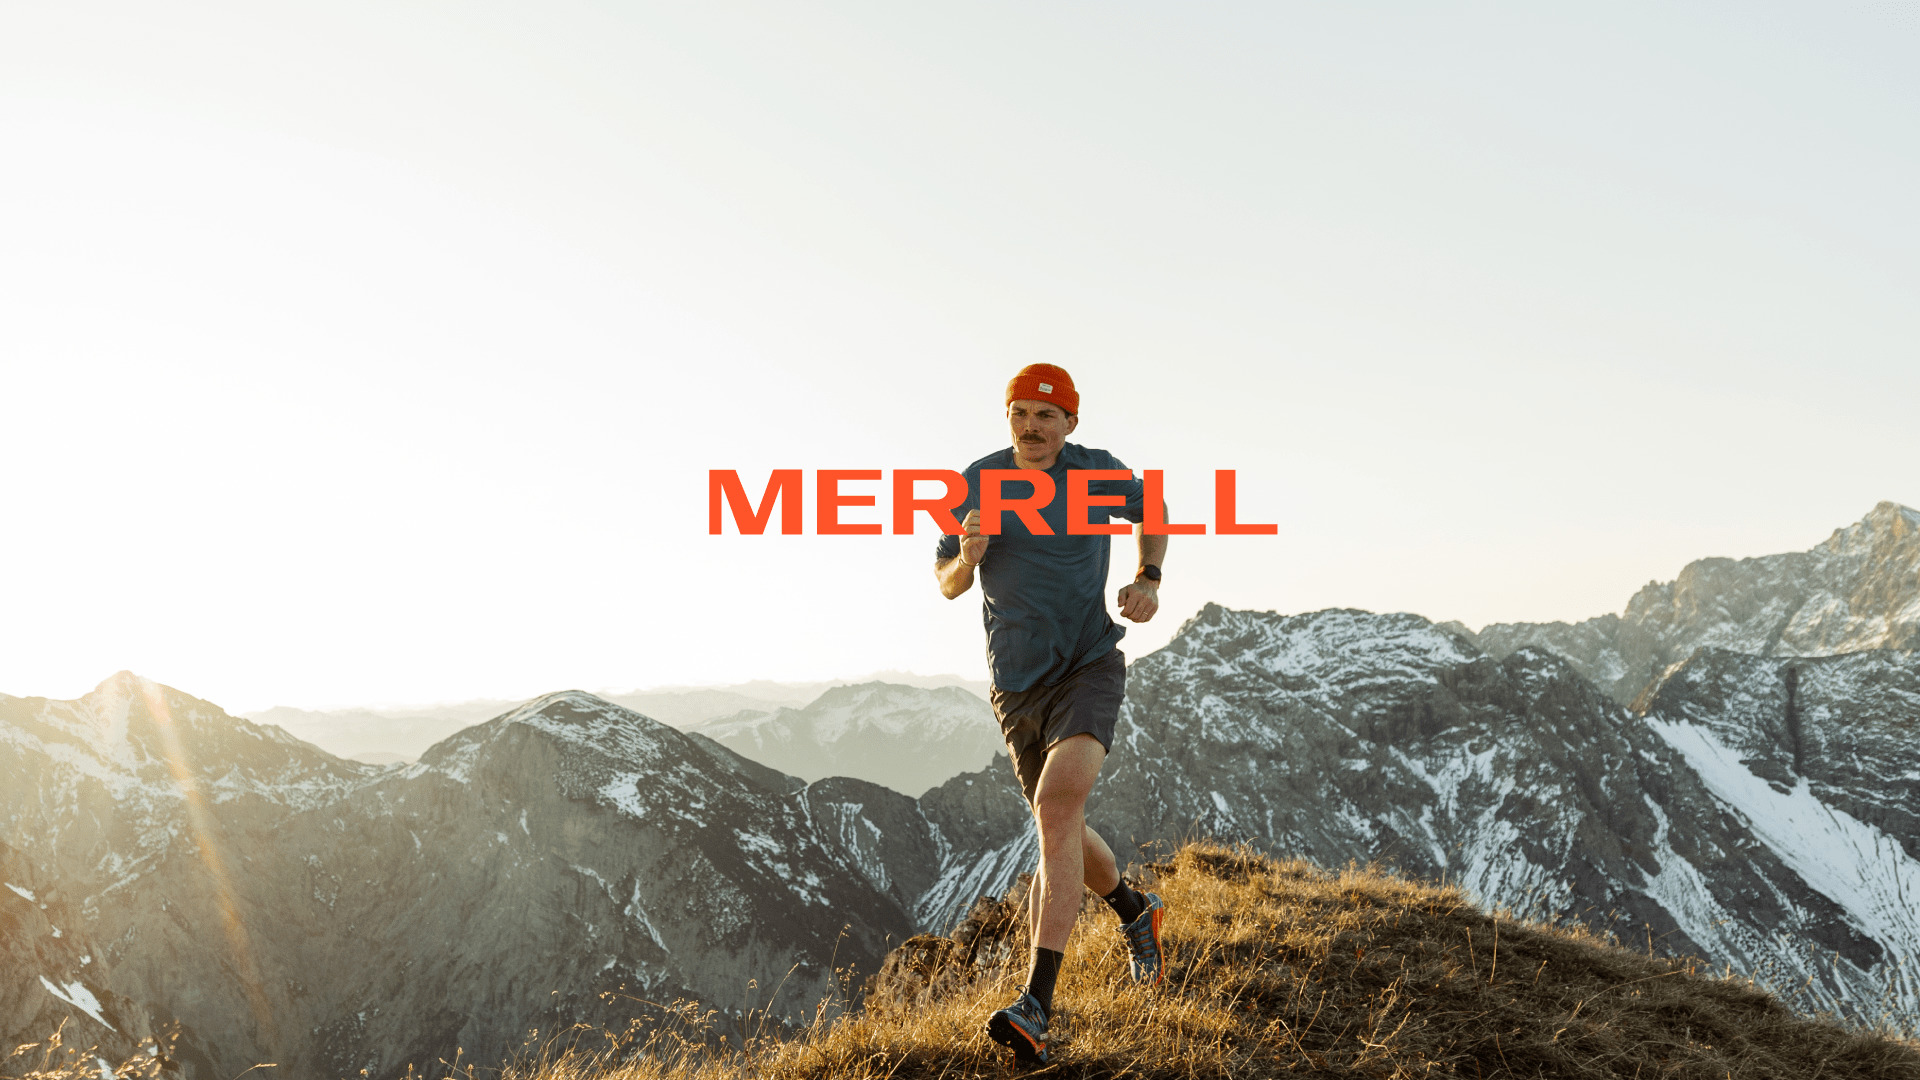 Mejores zapatillas trail de Merrell para mujer